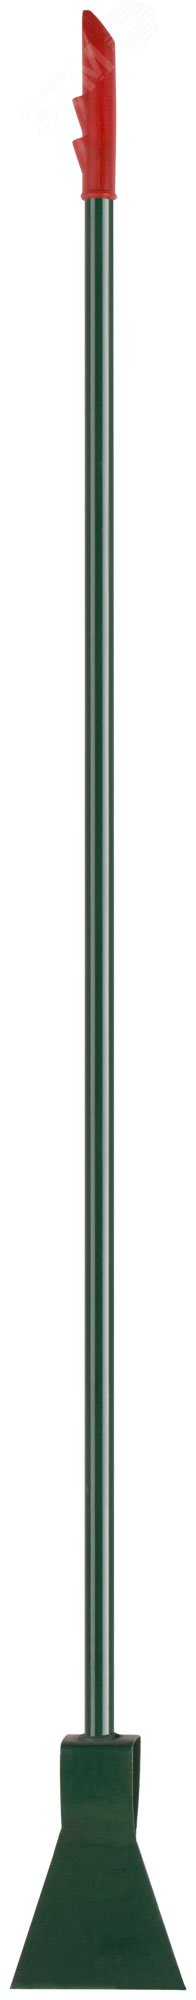 Ледоруб металлическая труба, с топором Б2, 120x1430 мм 68141 КУРС РОС - превью